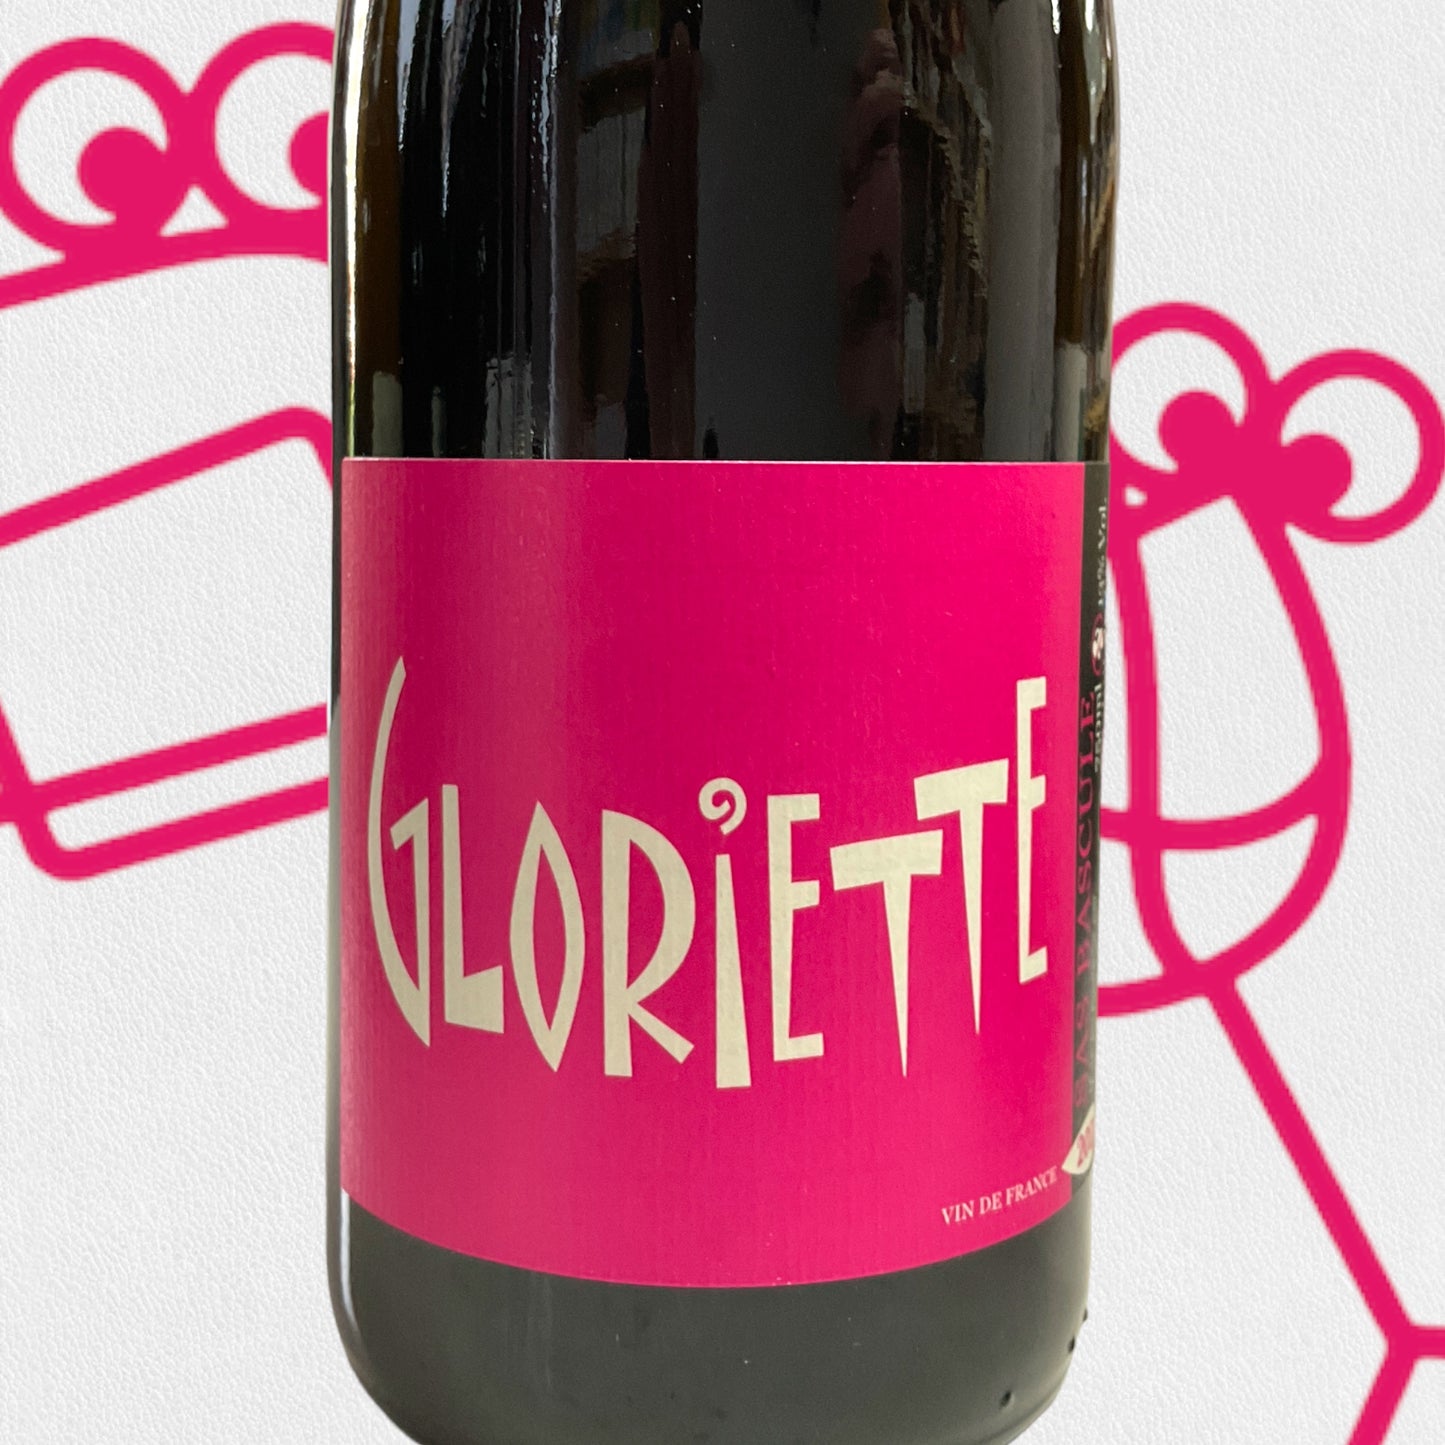 La Bascule 'Gloriette' 2021 Languedoc-Rousillon, France - Williston Park Wines & Spirits